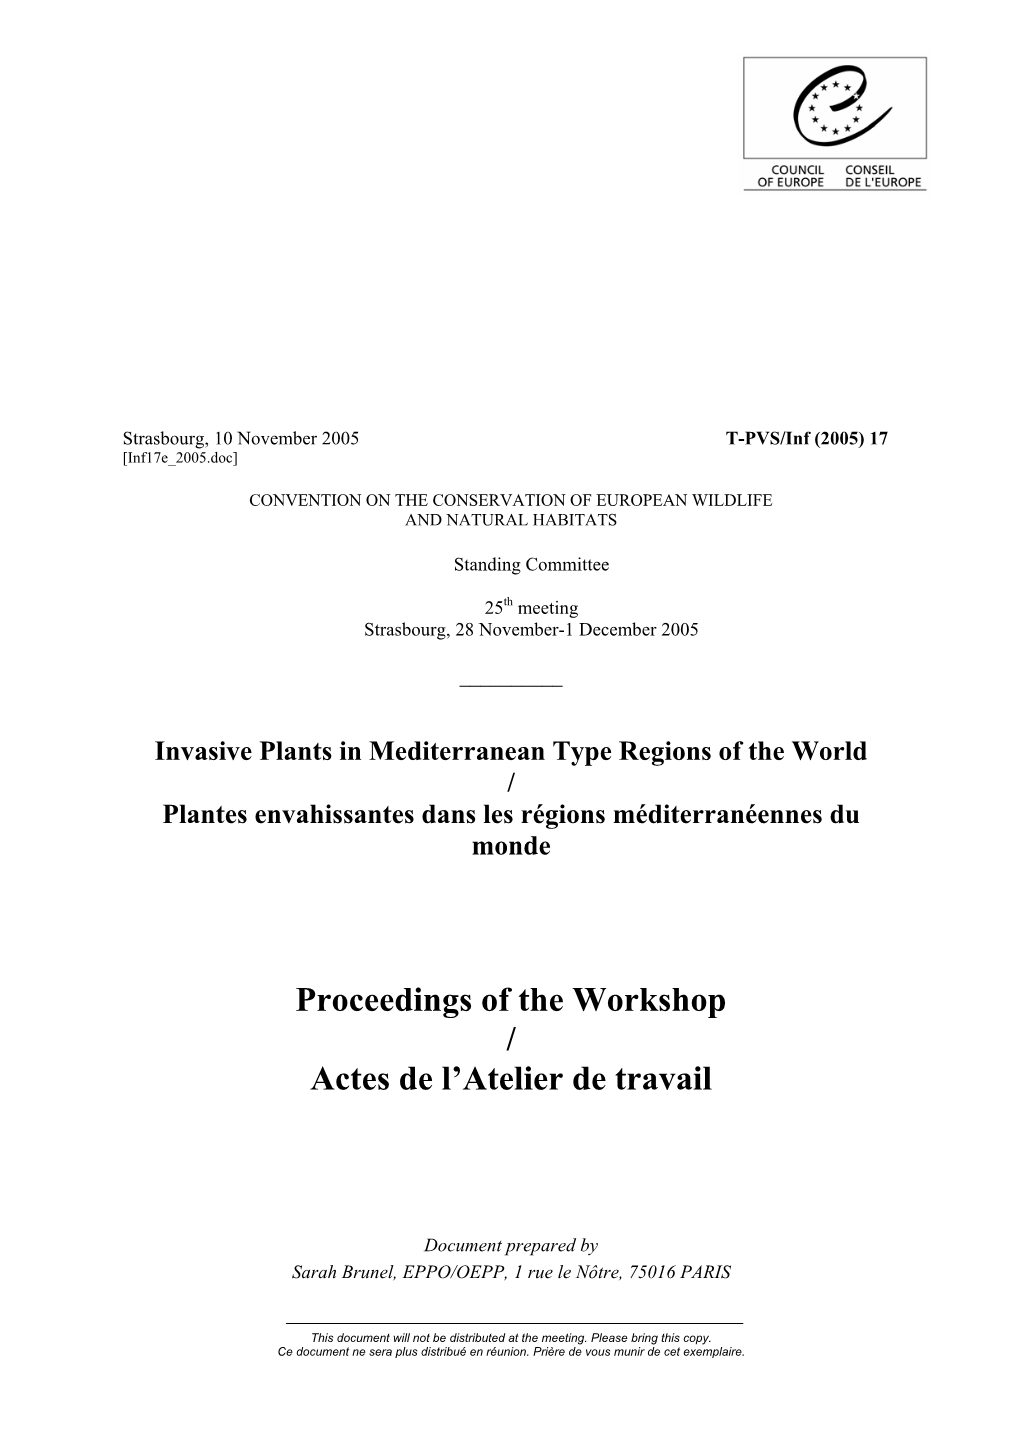 Proceedings of the Workshop / Actes De L'atelier De Travail